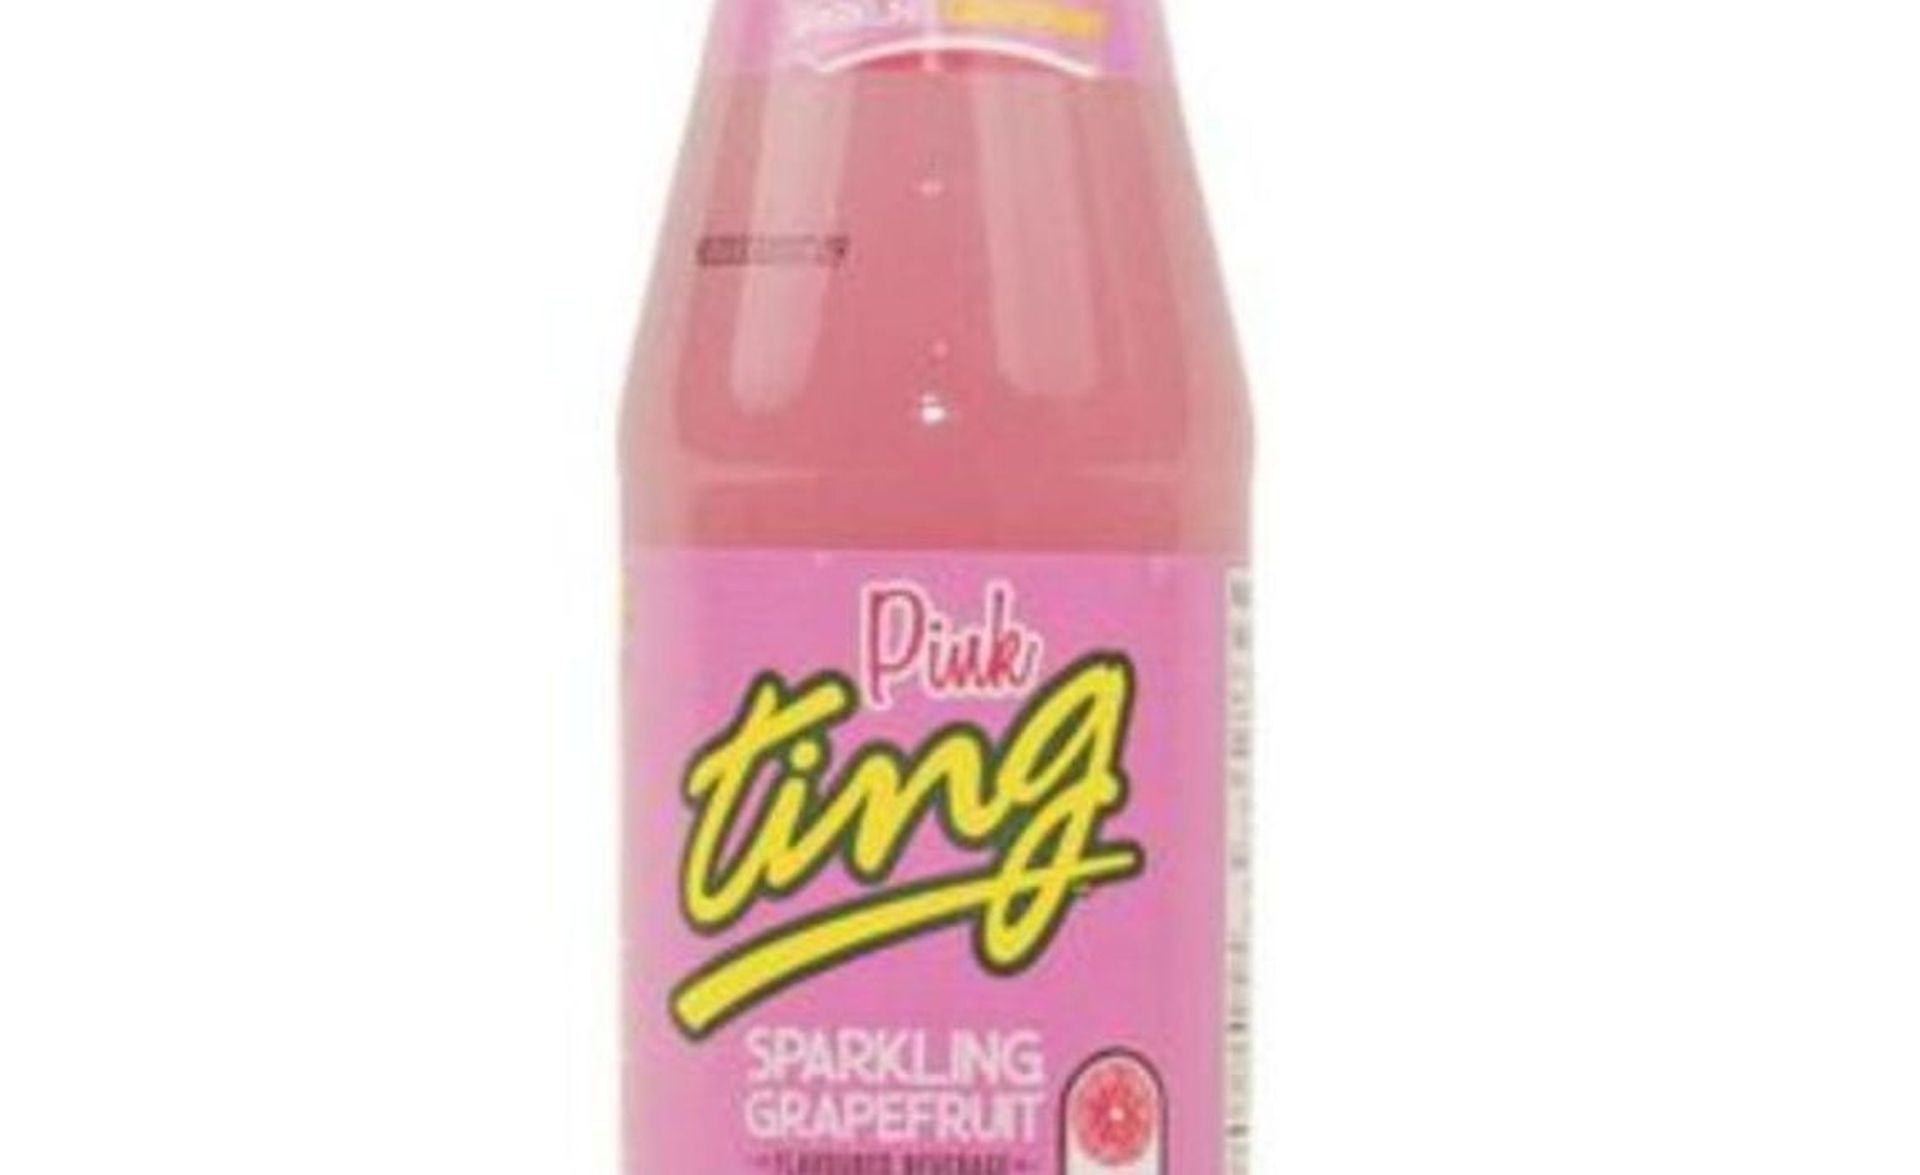 Pink Ting